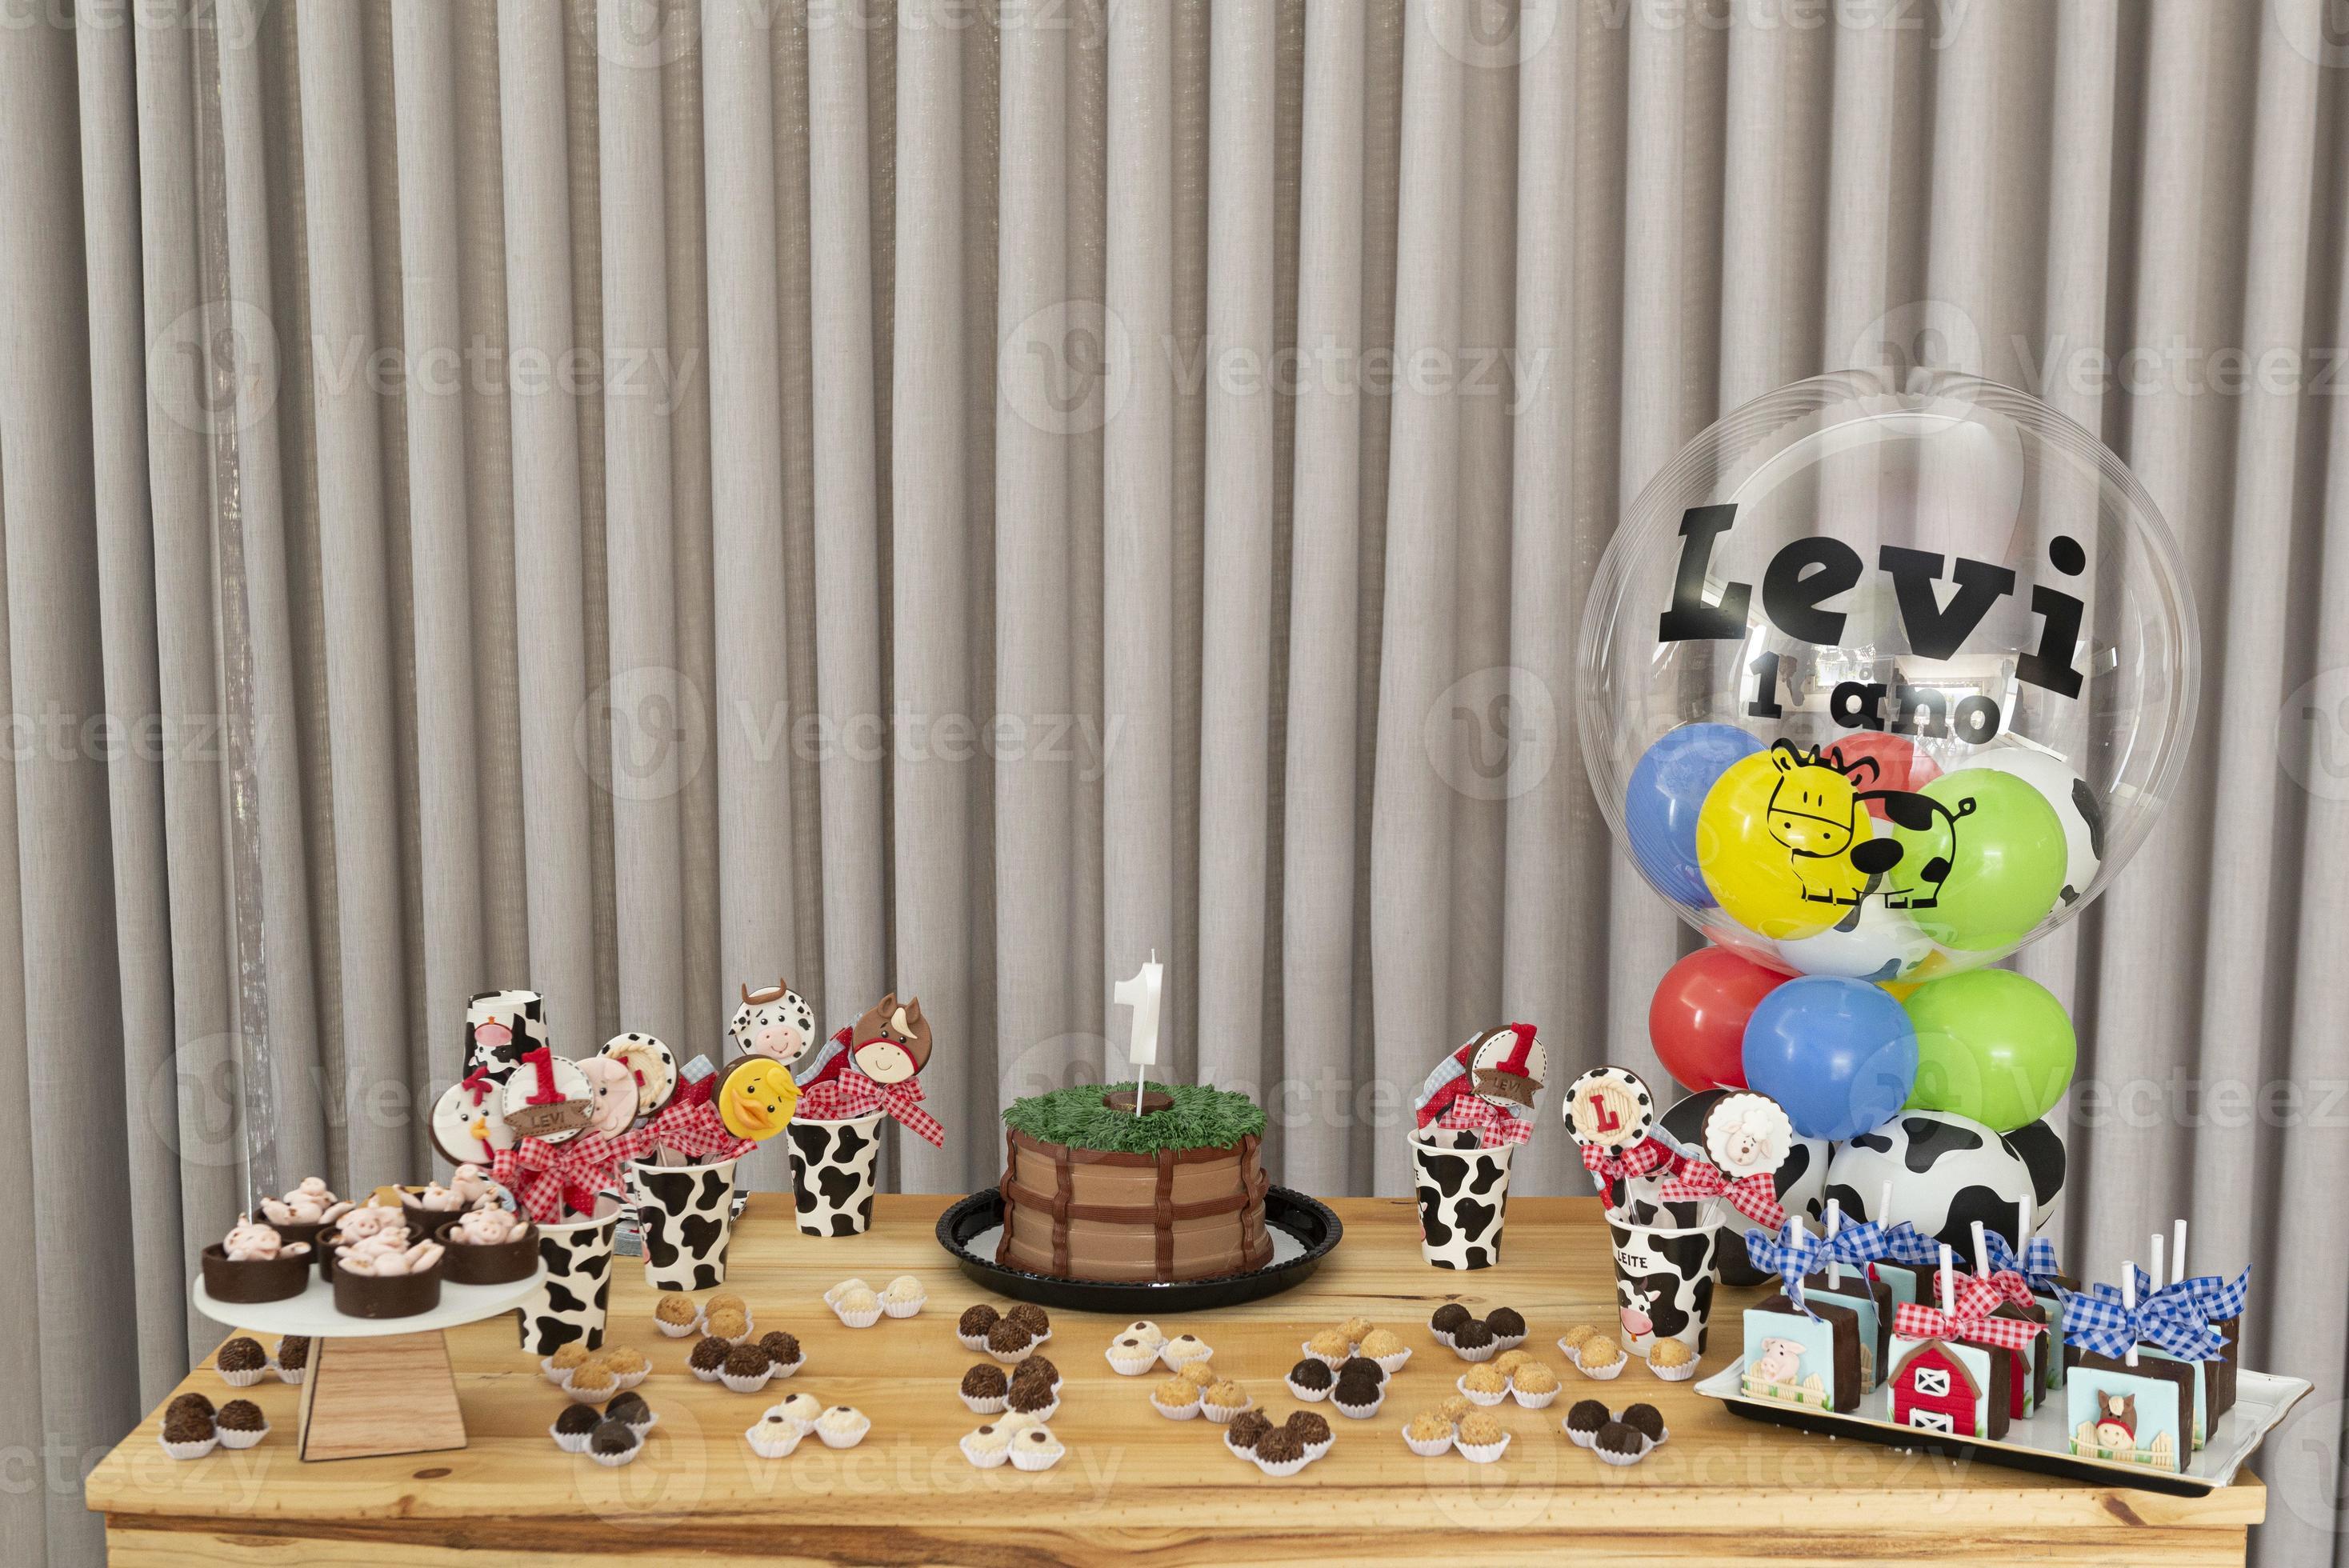 tavola rustica per torta di compleanno per bambini con fattoria, tema  campagna 3399733 Stock Photo su Vecteezy